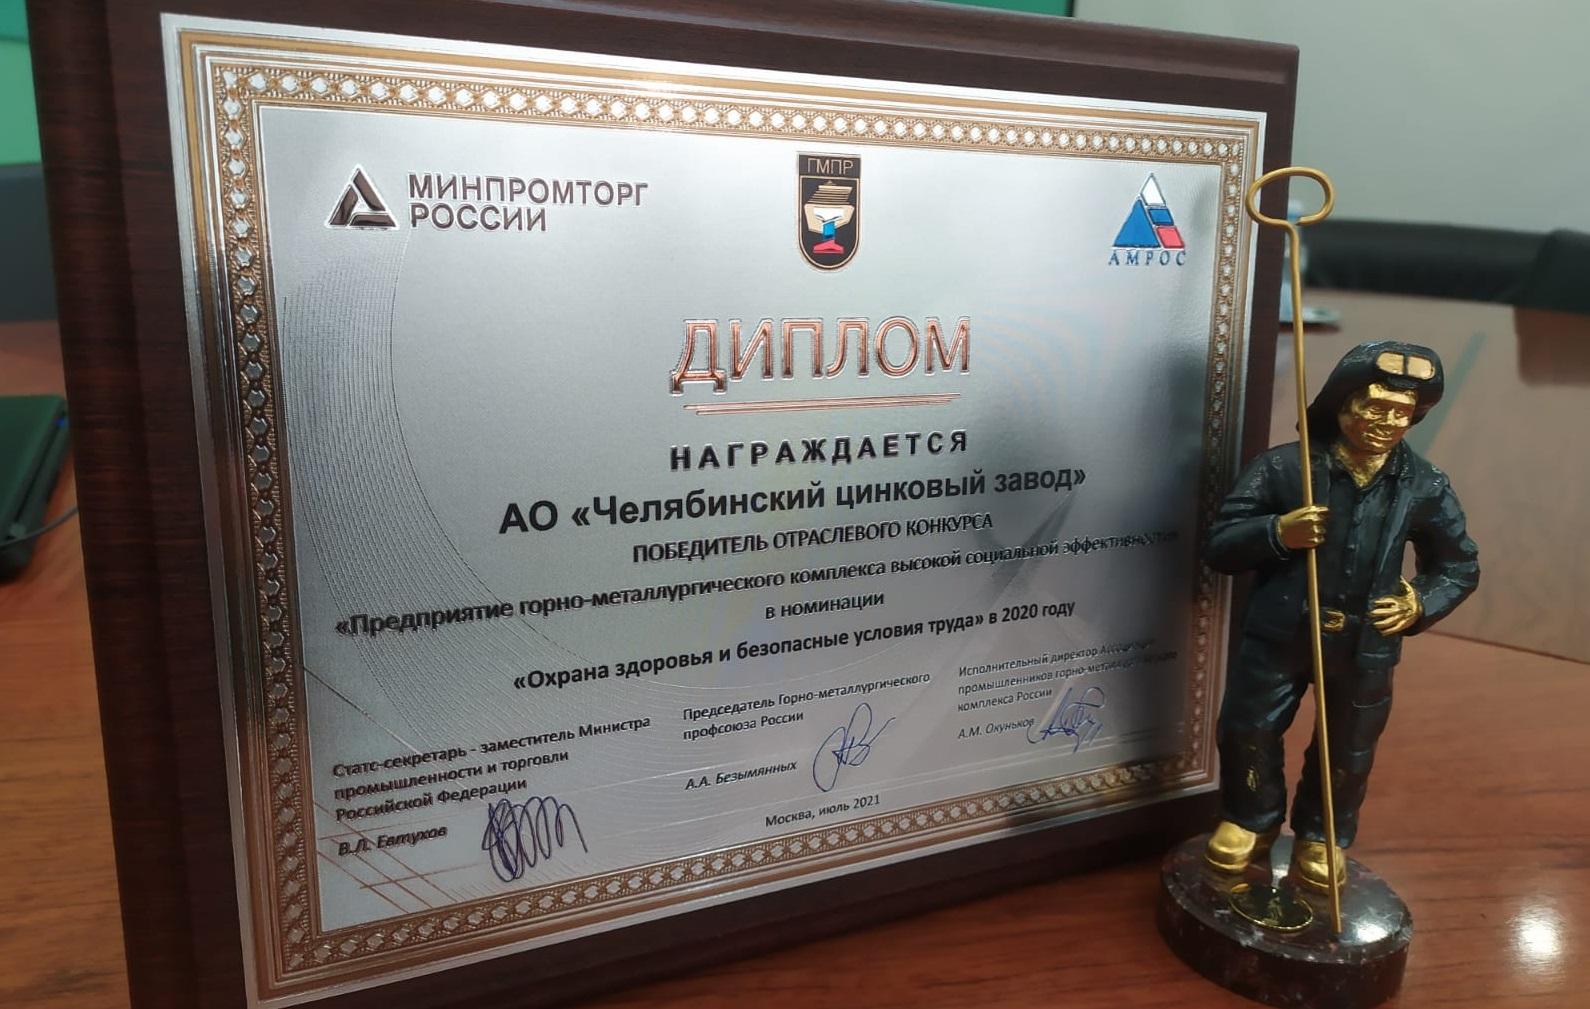 Челябинский цинковый завод стал победителем XVIII отраслевого конкурса «Предприятие горно-металлургического комплекса высокой социальной эффективности» 